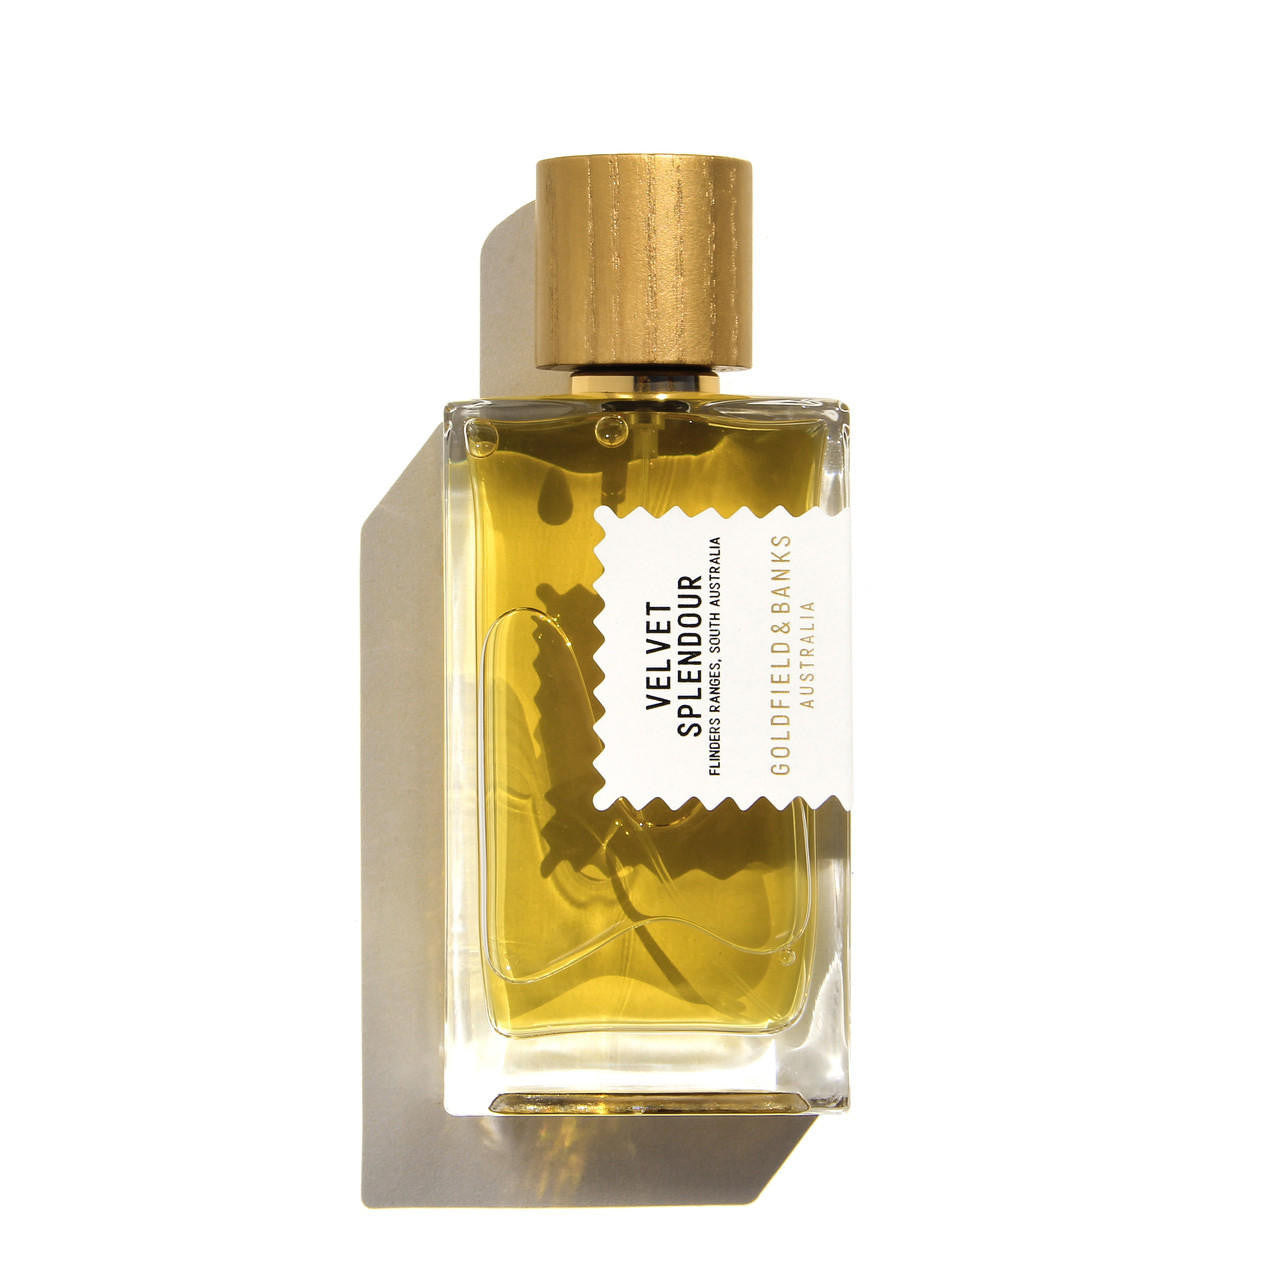  Goldfield & Banks Australia VELVET SPLENDOUR Perfume Concentrate 